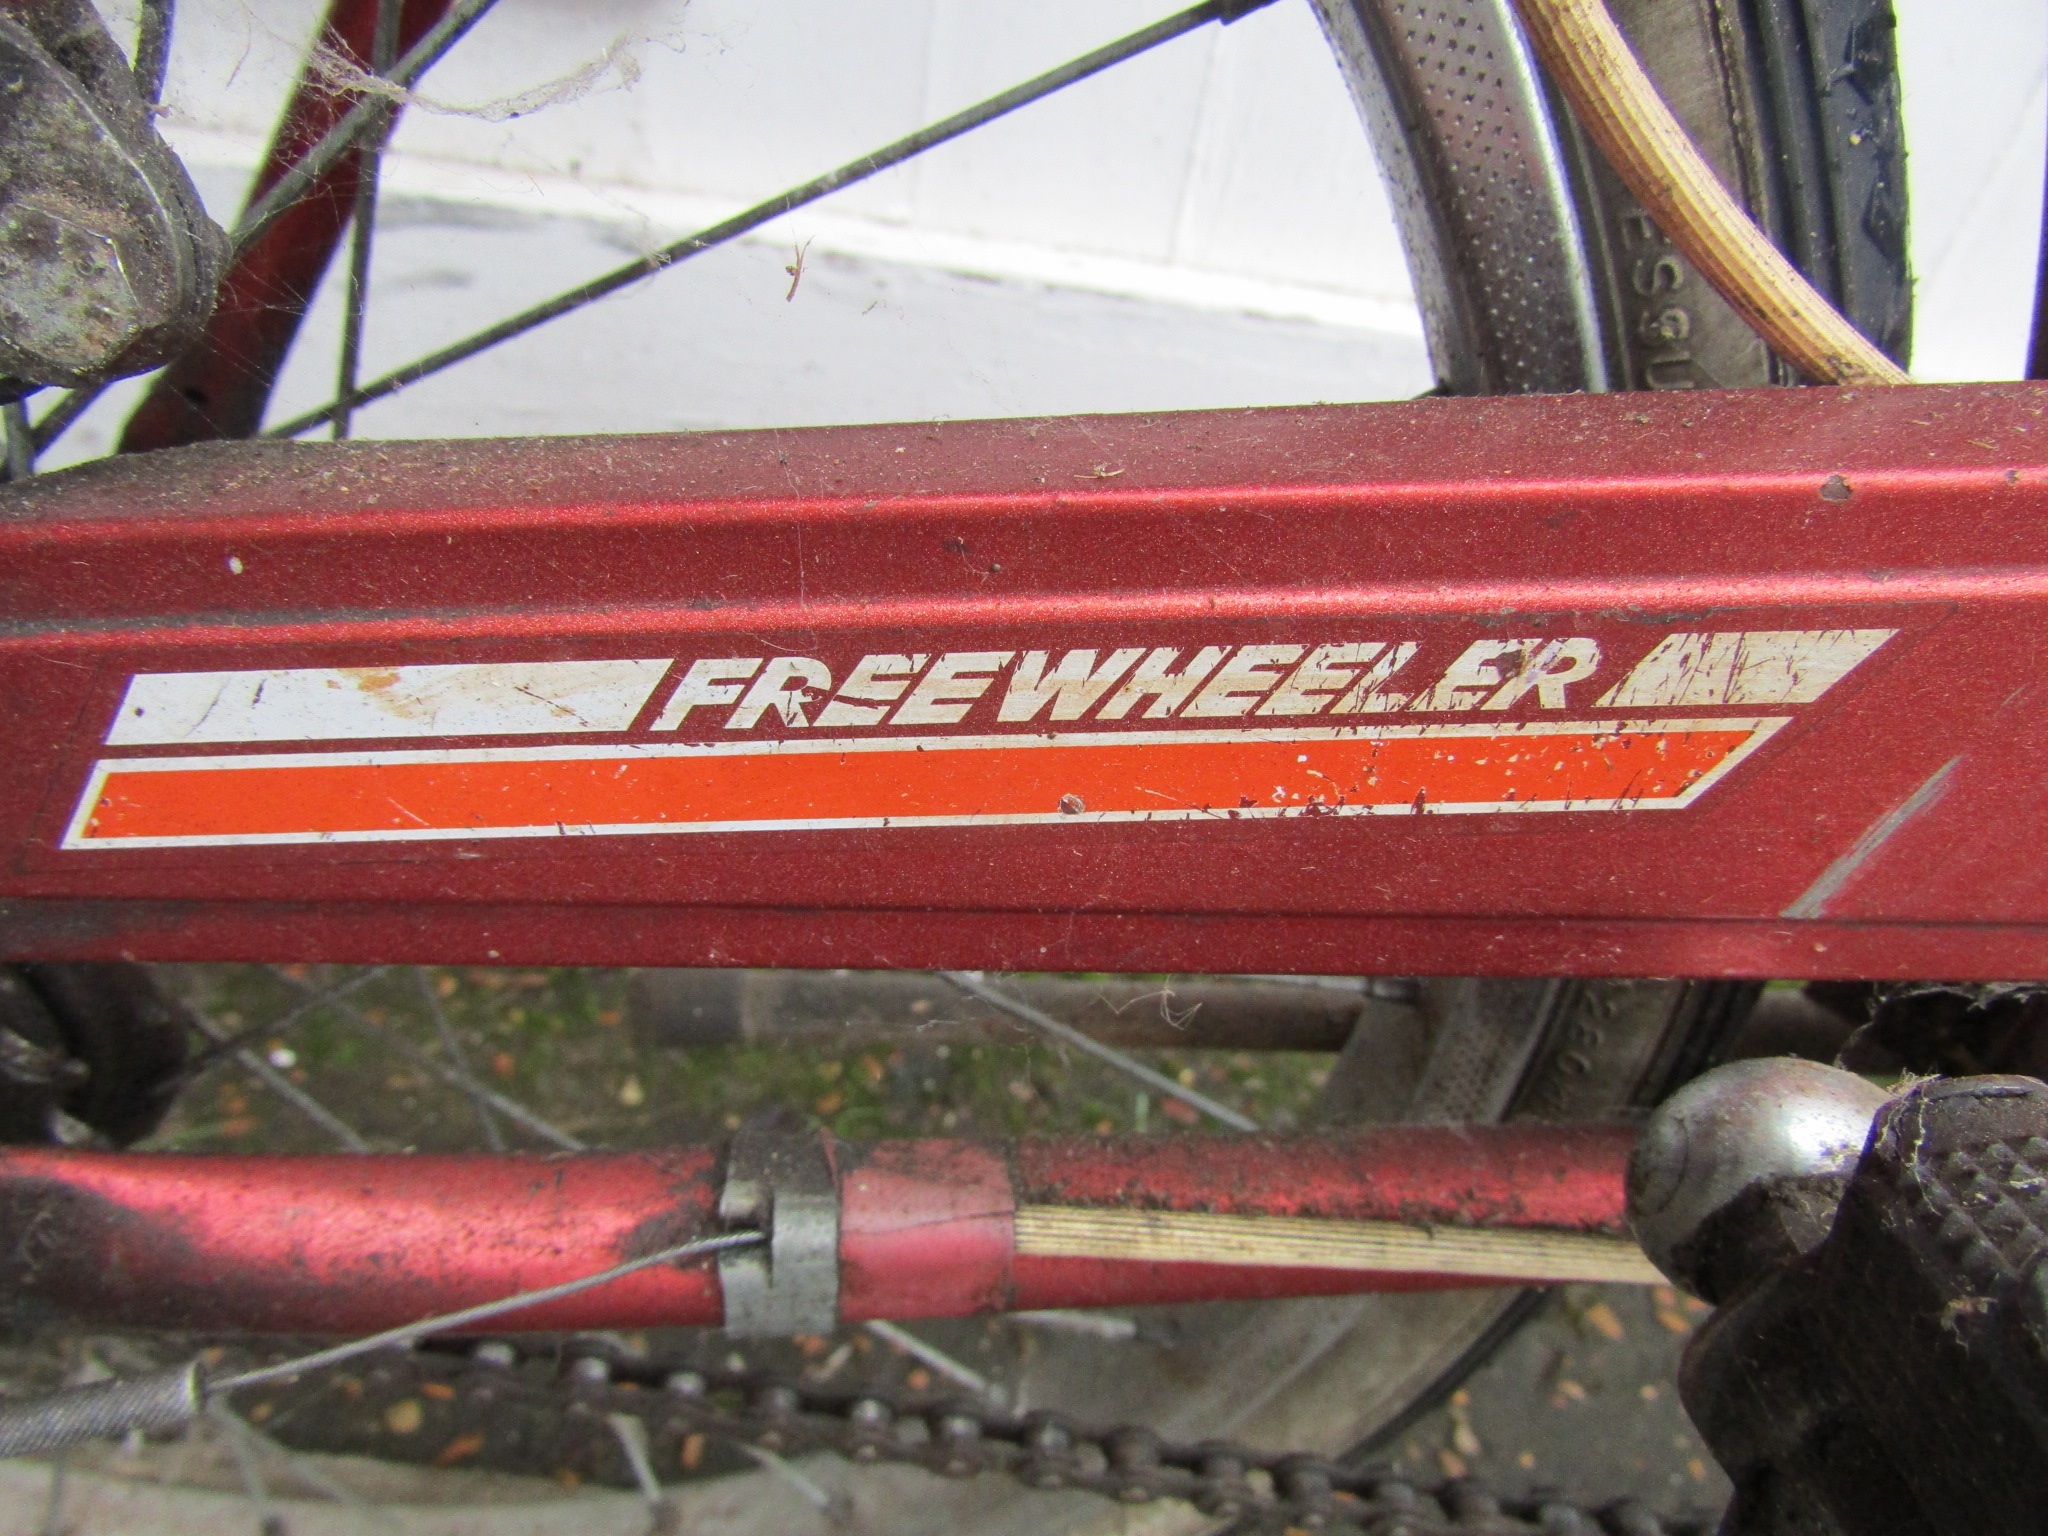 Vintage Freewheeler folding bike - Image 2 of 2